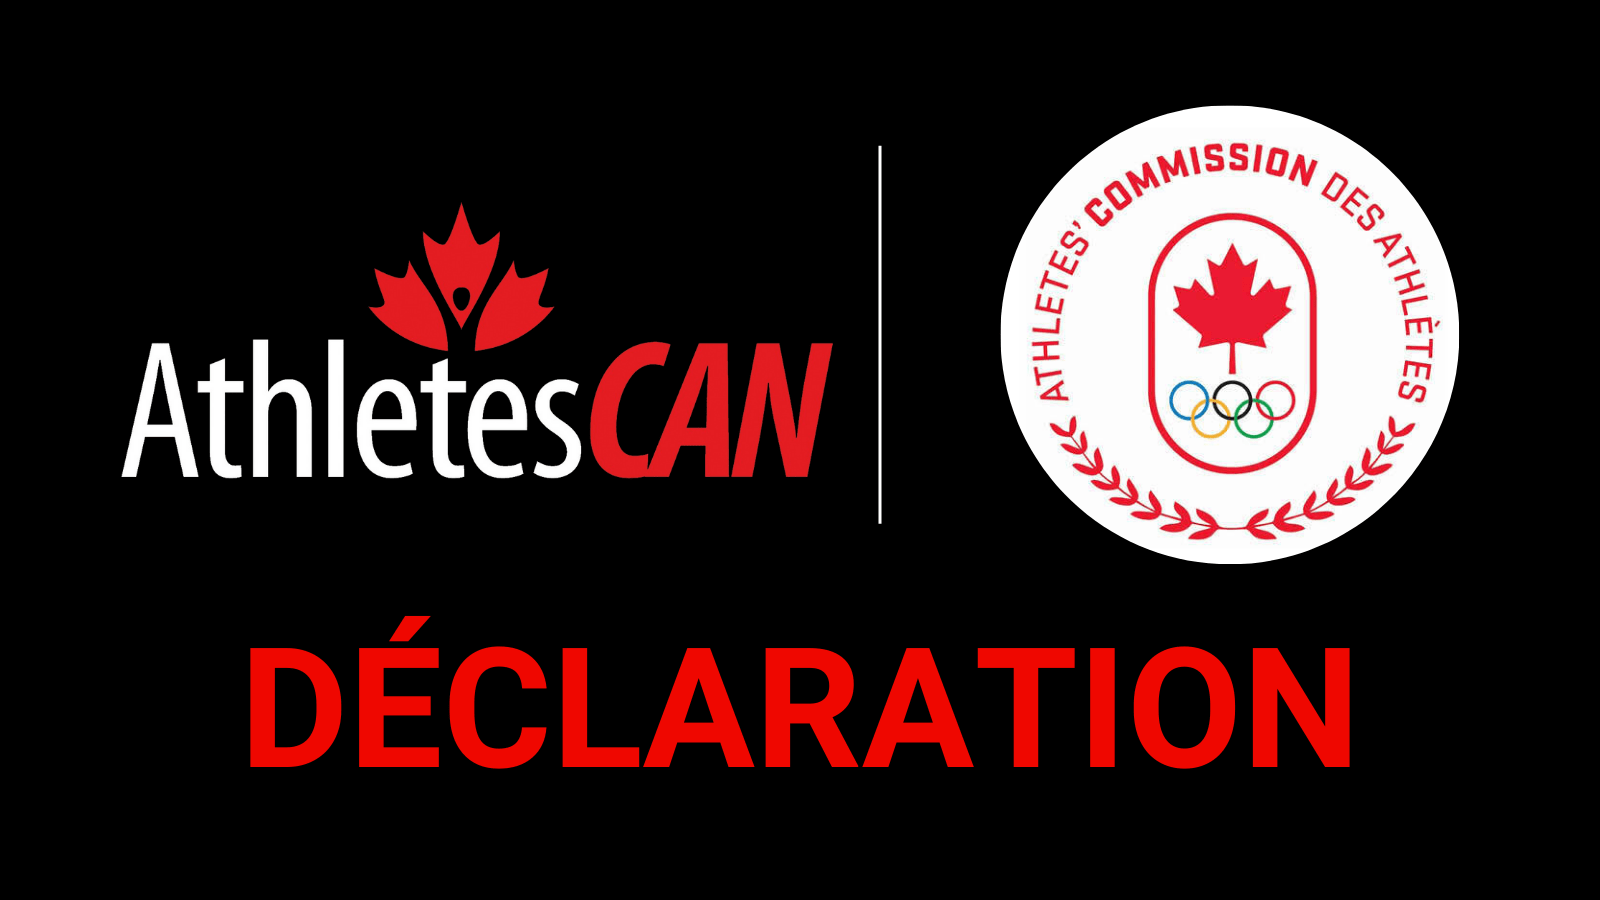 Déclaration : AthlètesCAN et la Commission des athlètes du COC soutiennent le lancement par la ministre Qualtrough de la Commission sur l’avenir du sport au Canada